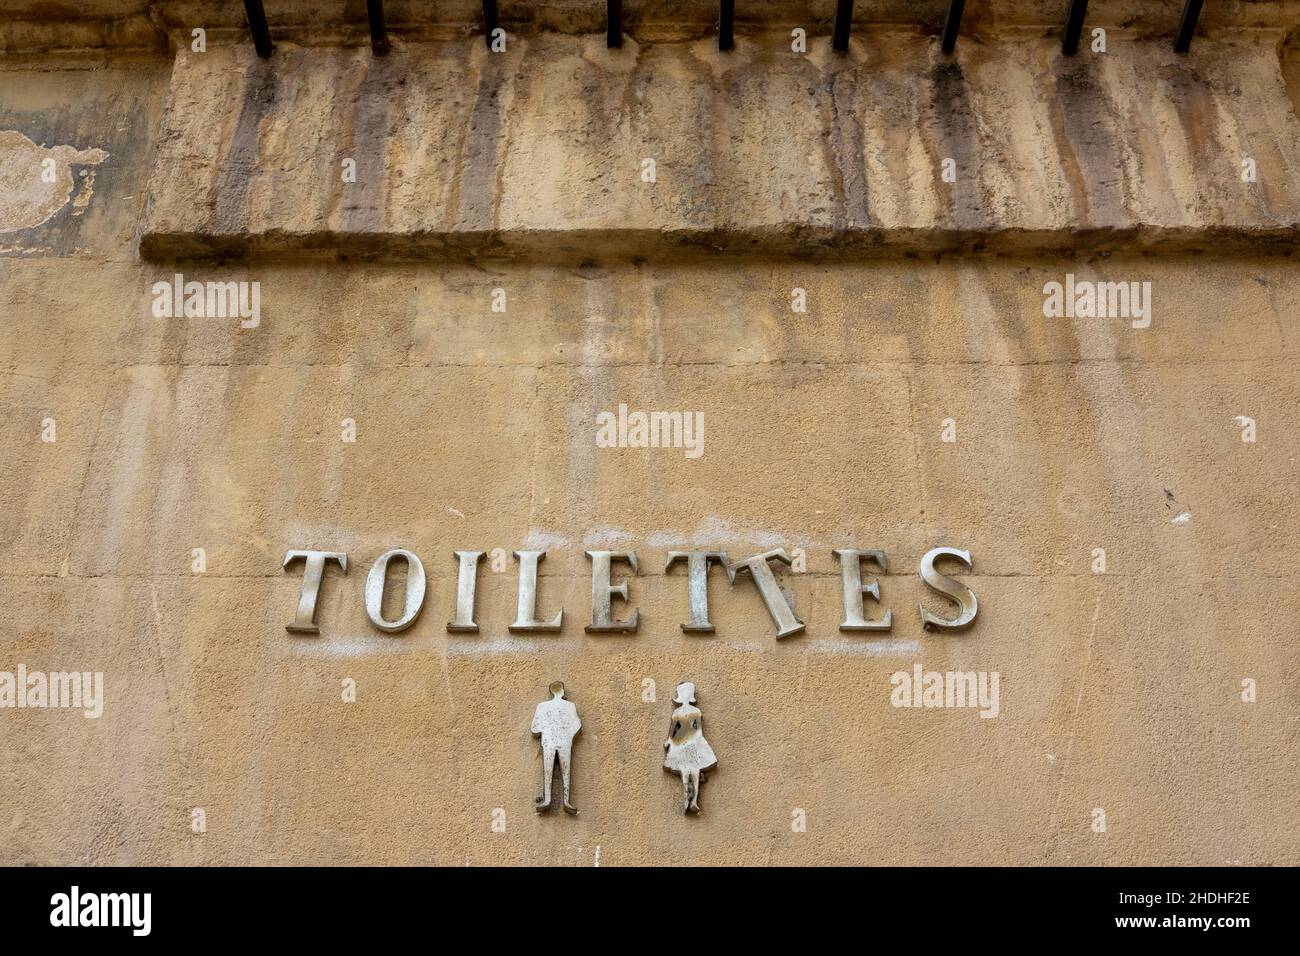 toilet, sanitary facilities, sanitary facility, toilets Stock Photo